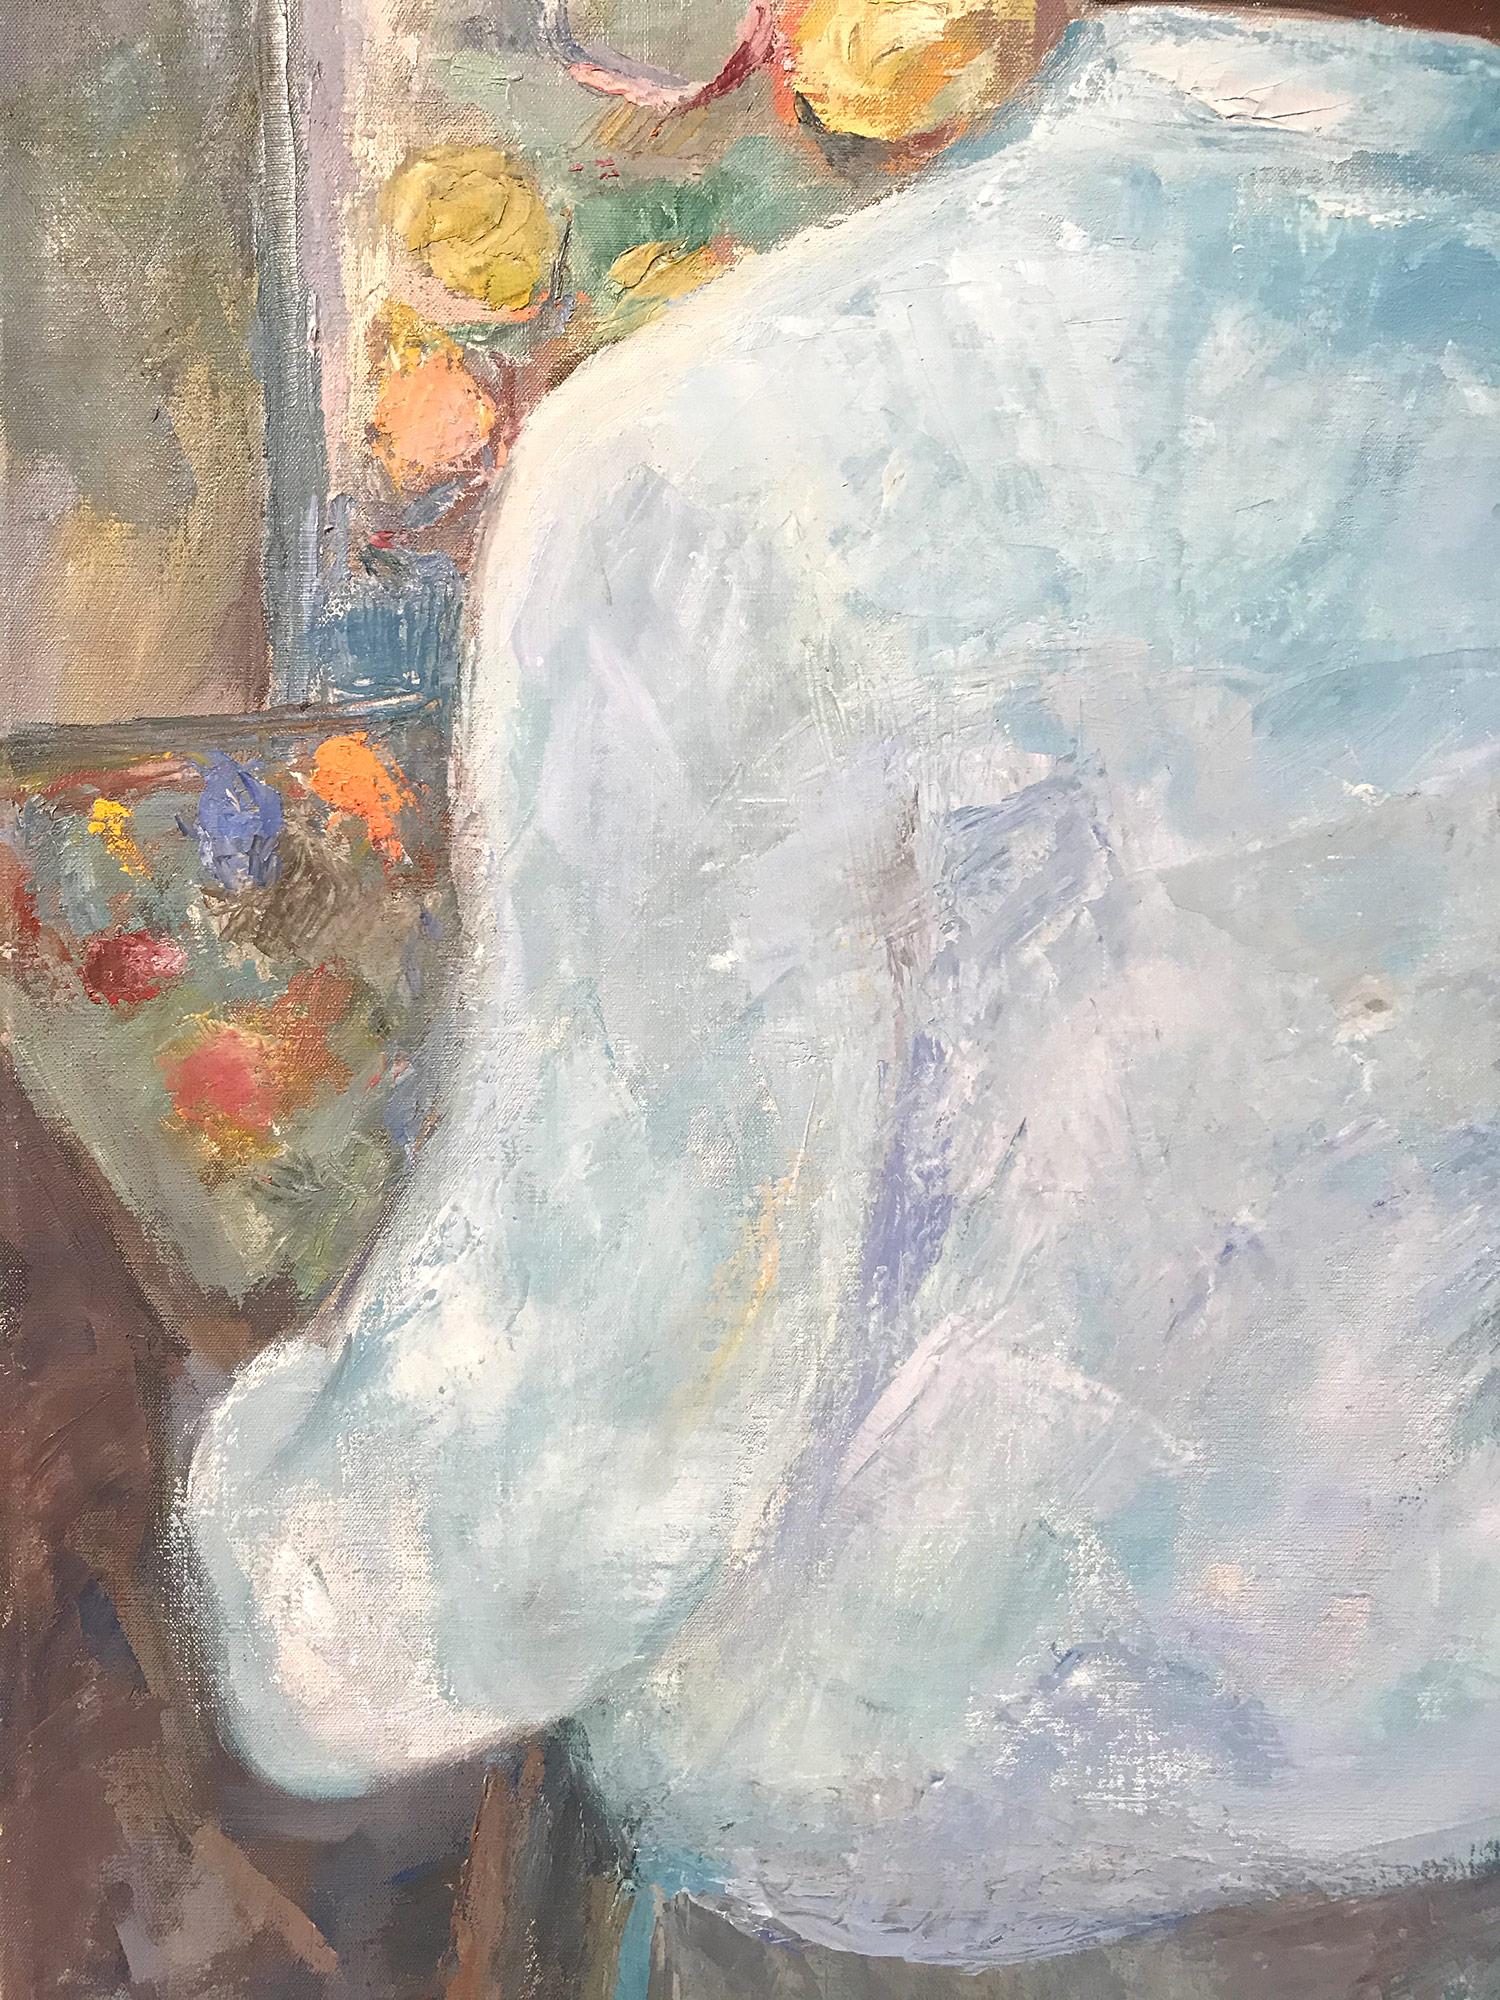 Une peinture à l'huile d'un modernisme puissant, réalisée au milieu du siècle dernier par le peintre russe Michael Baxte. Principalement connue pour ses figures abstraites sur toile ou ses scènes de rue, cette pièce est une merveilleuse